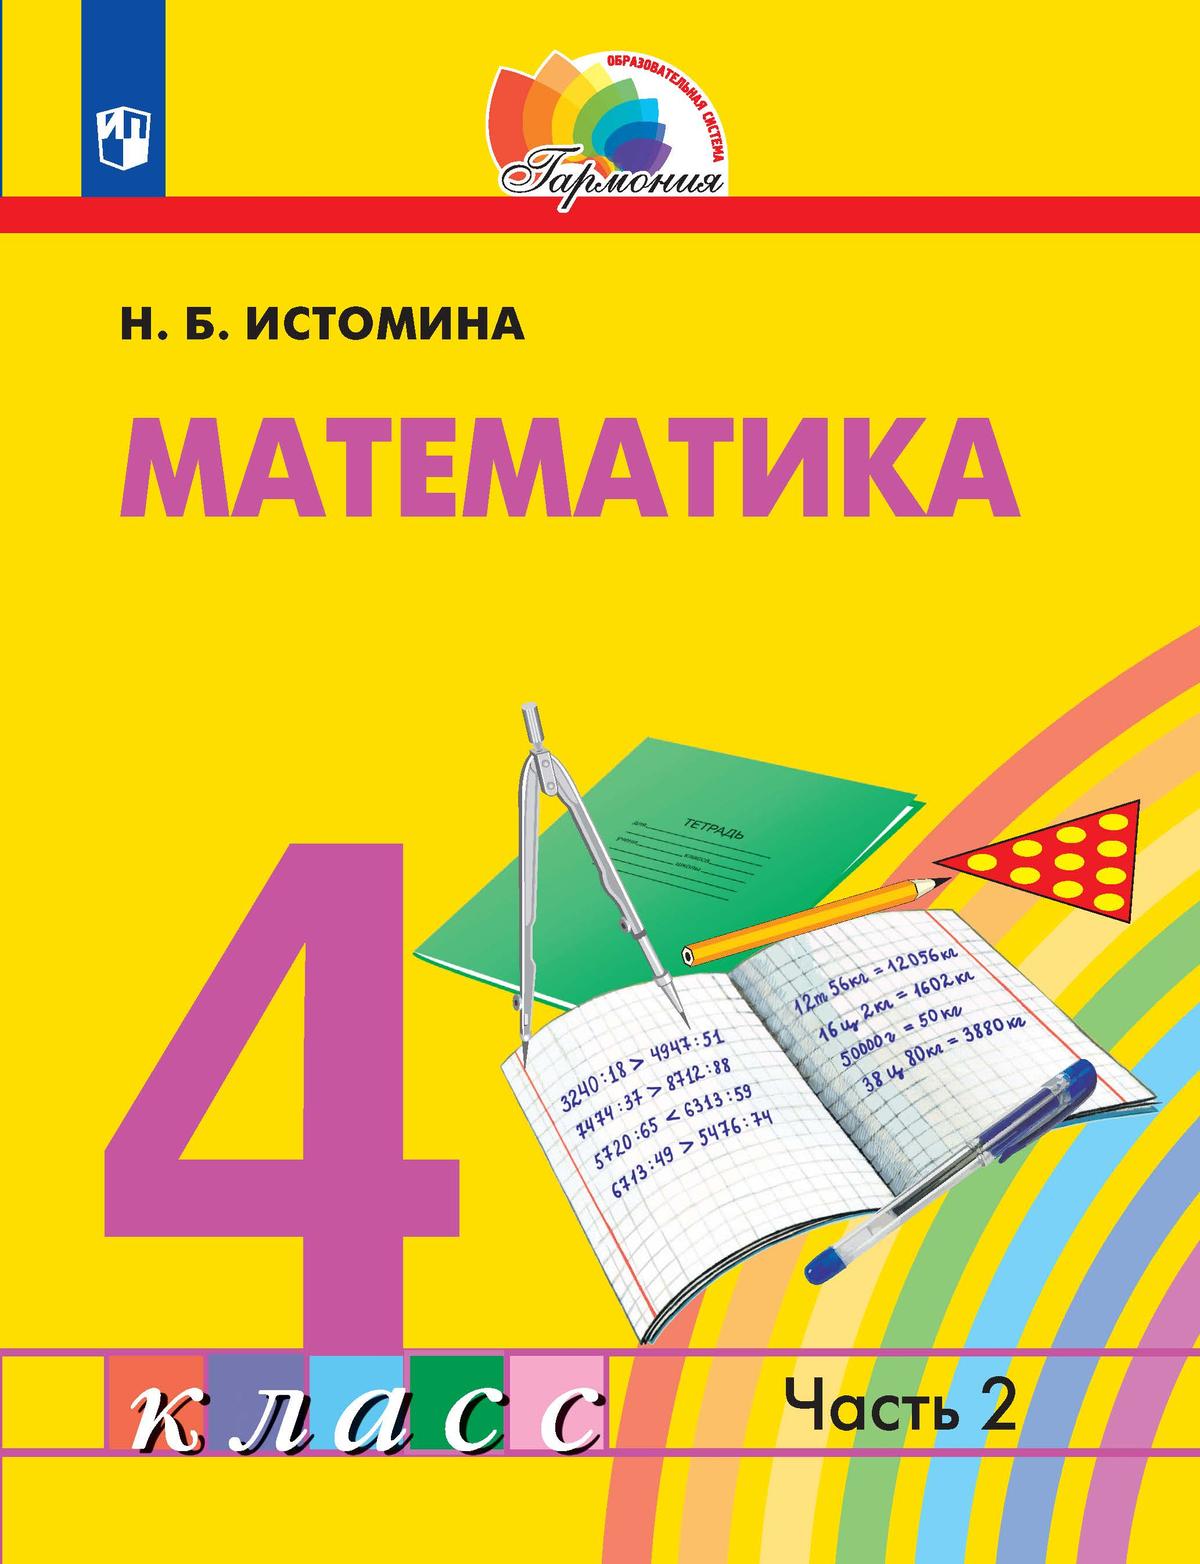 Математика. 4 класс. Электронная форма учебника. В 2 ч. Часть 2 1